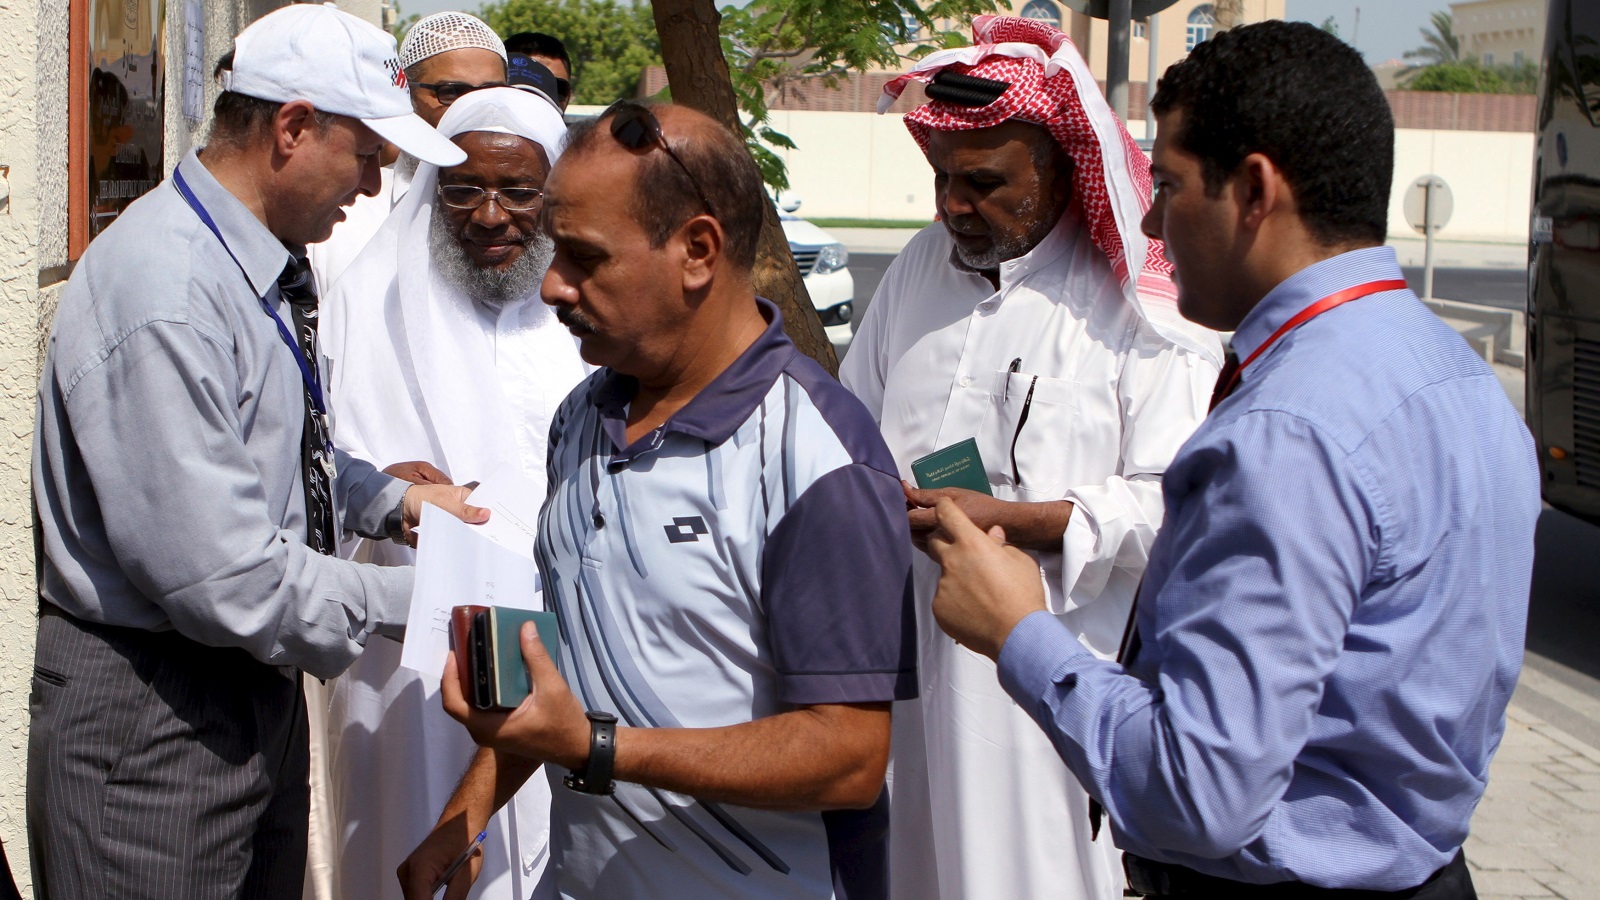 انخفضت نسبة الوافدين العرب في مجموع دول مجلس التعاون الخليجي الست من 72% في عام 1975 إلى 25-29% في عام 2002